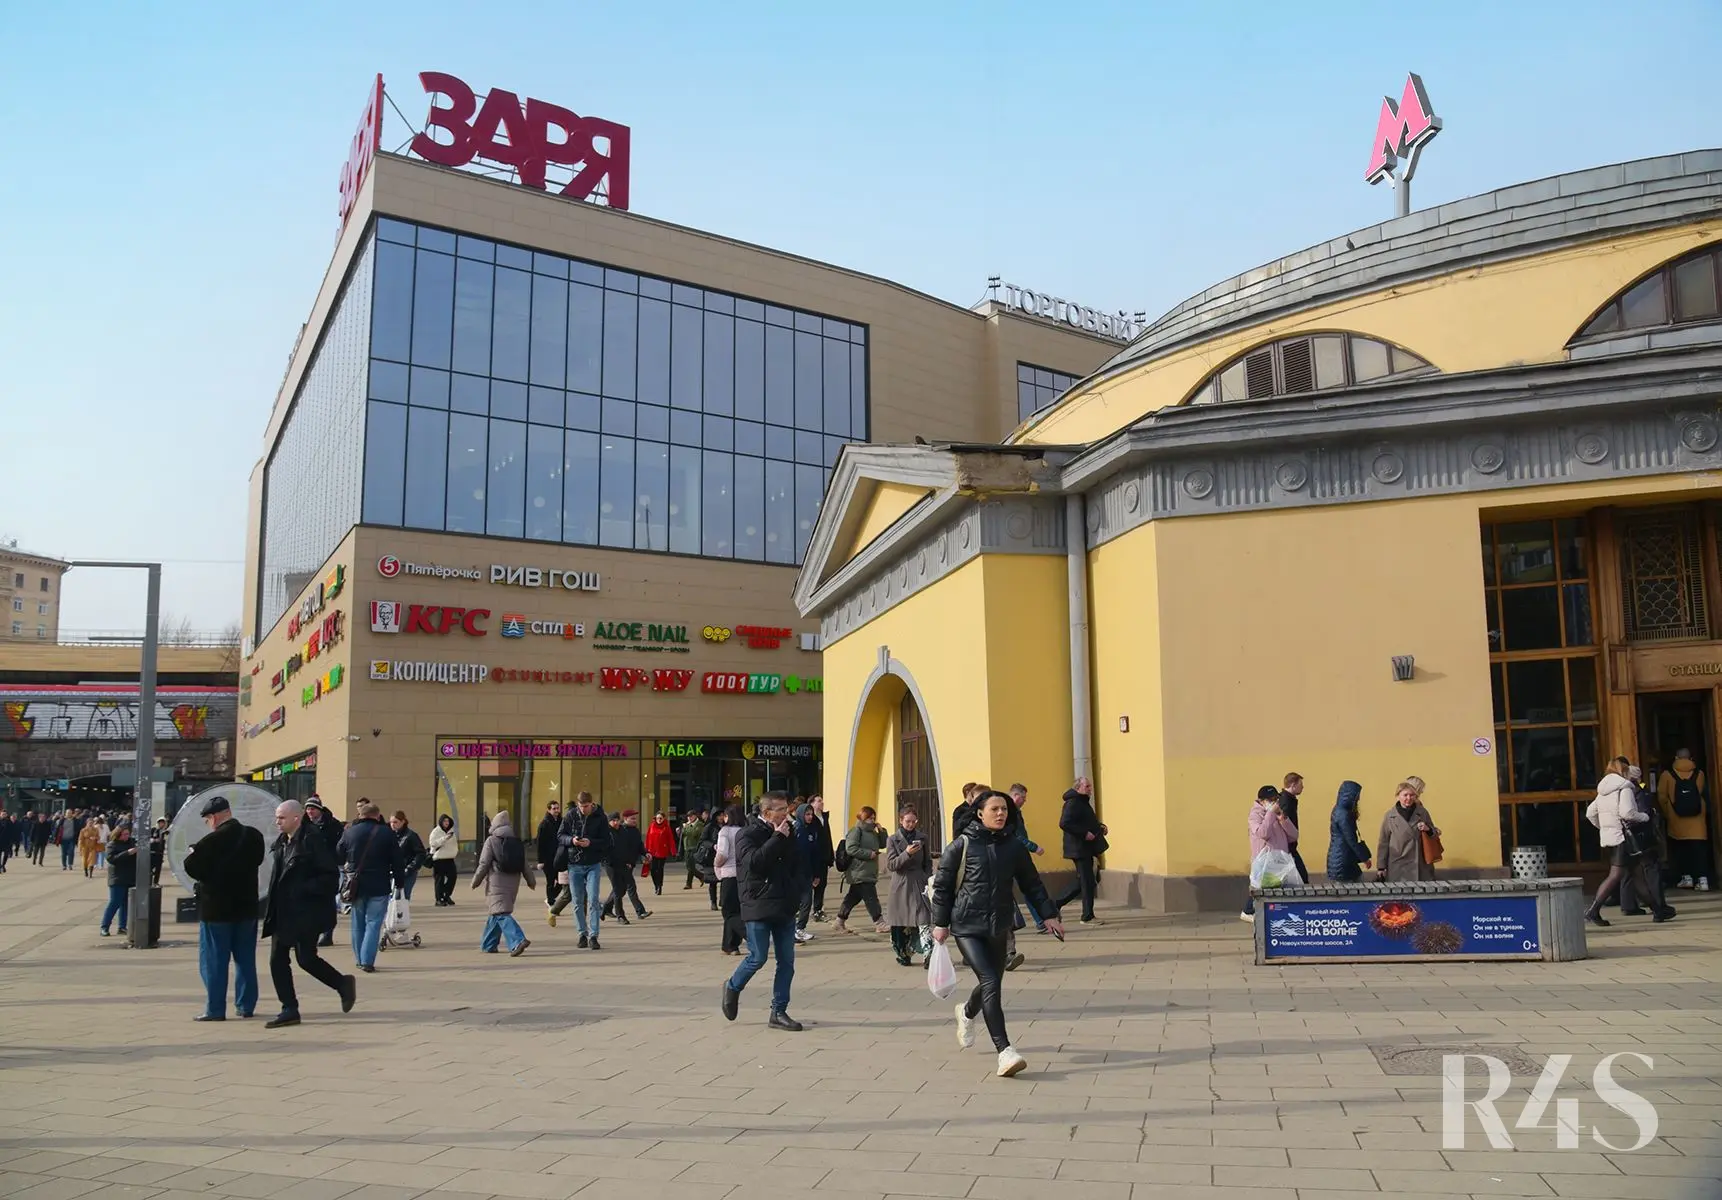 Продажа готового арендного бизнеса площадью 7290 м2 в Москве: Большая Семеновская, 20 ТЦ«ЗАРЯ» R4S | Realty4Sale